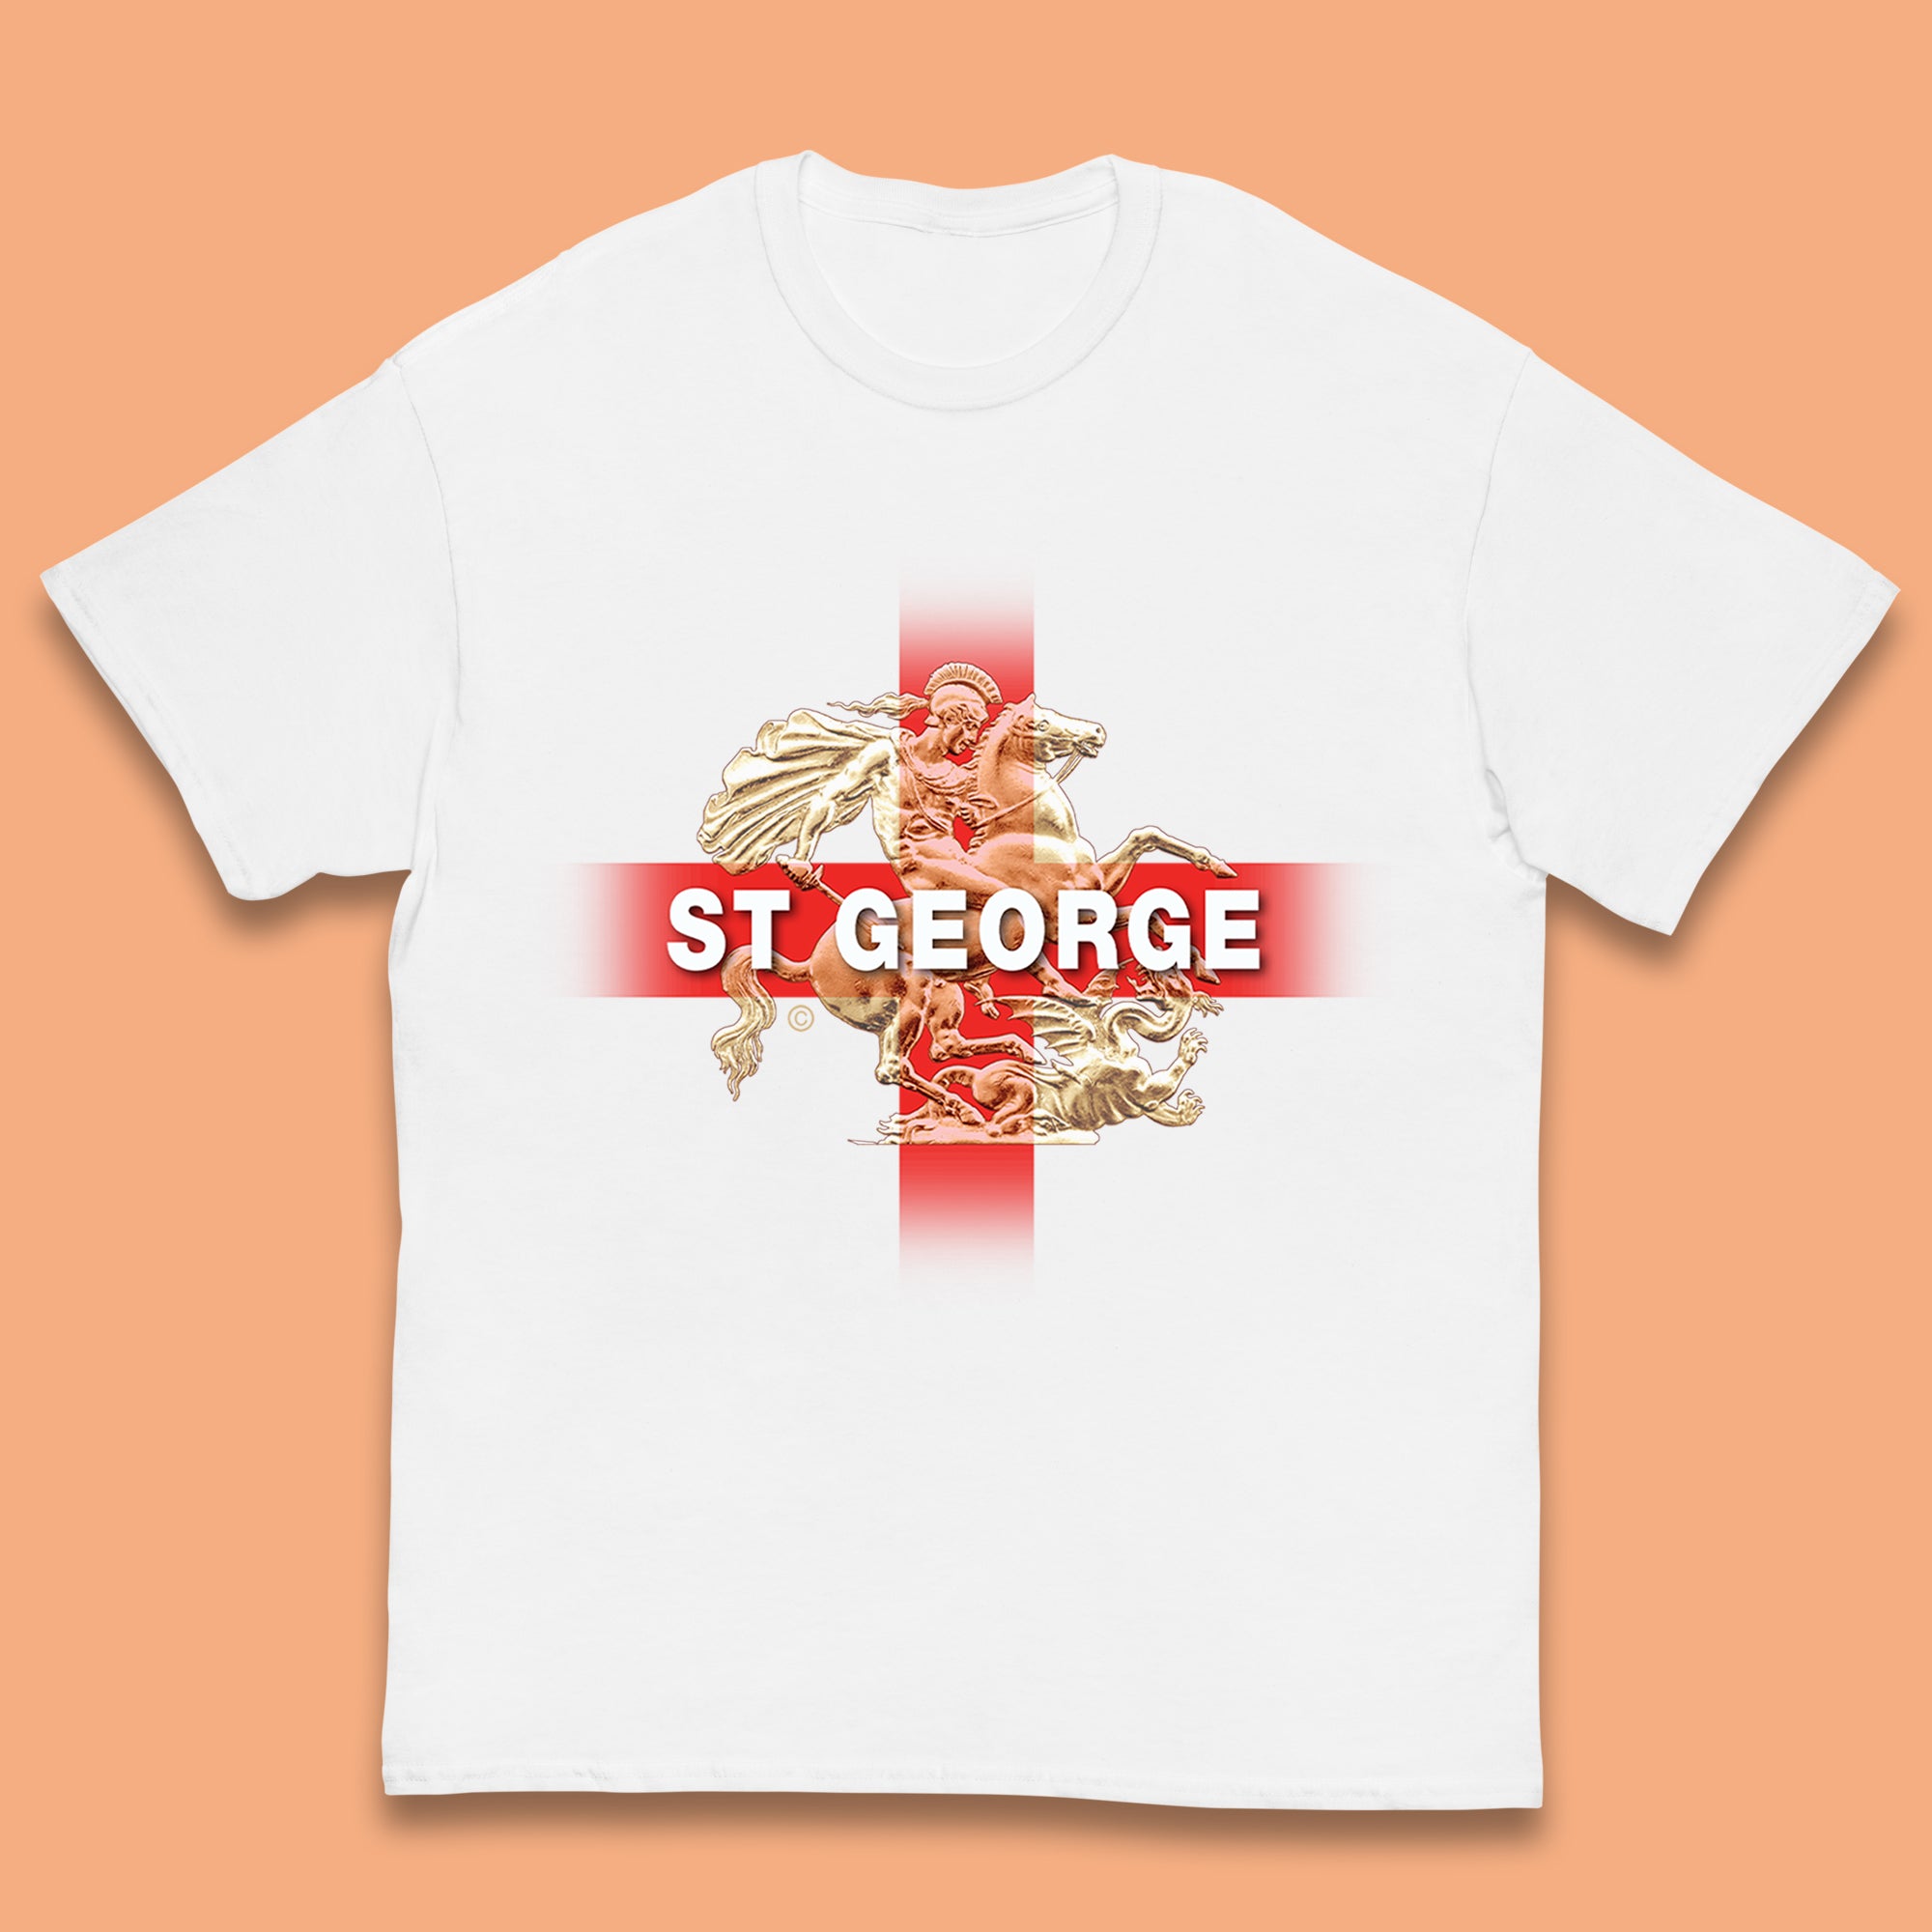 St George Kids T-Shirt